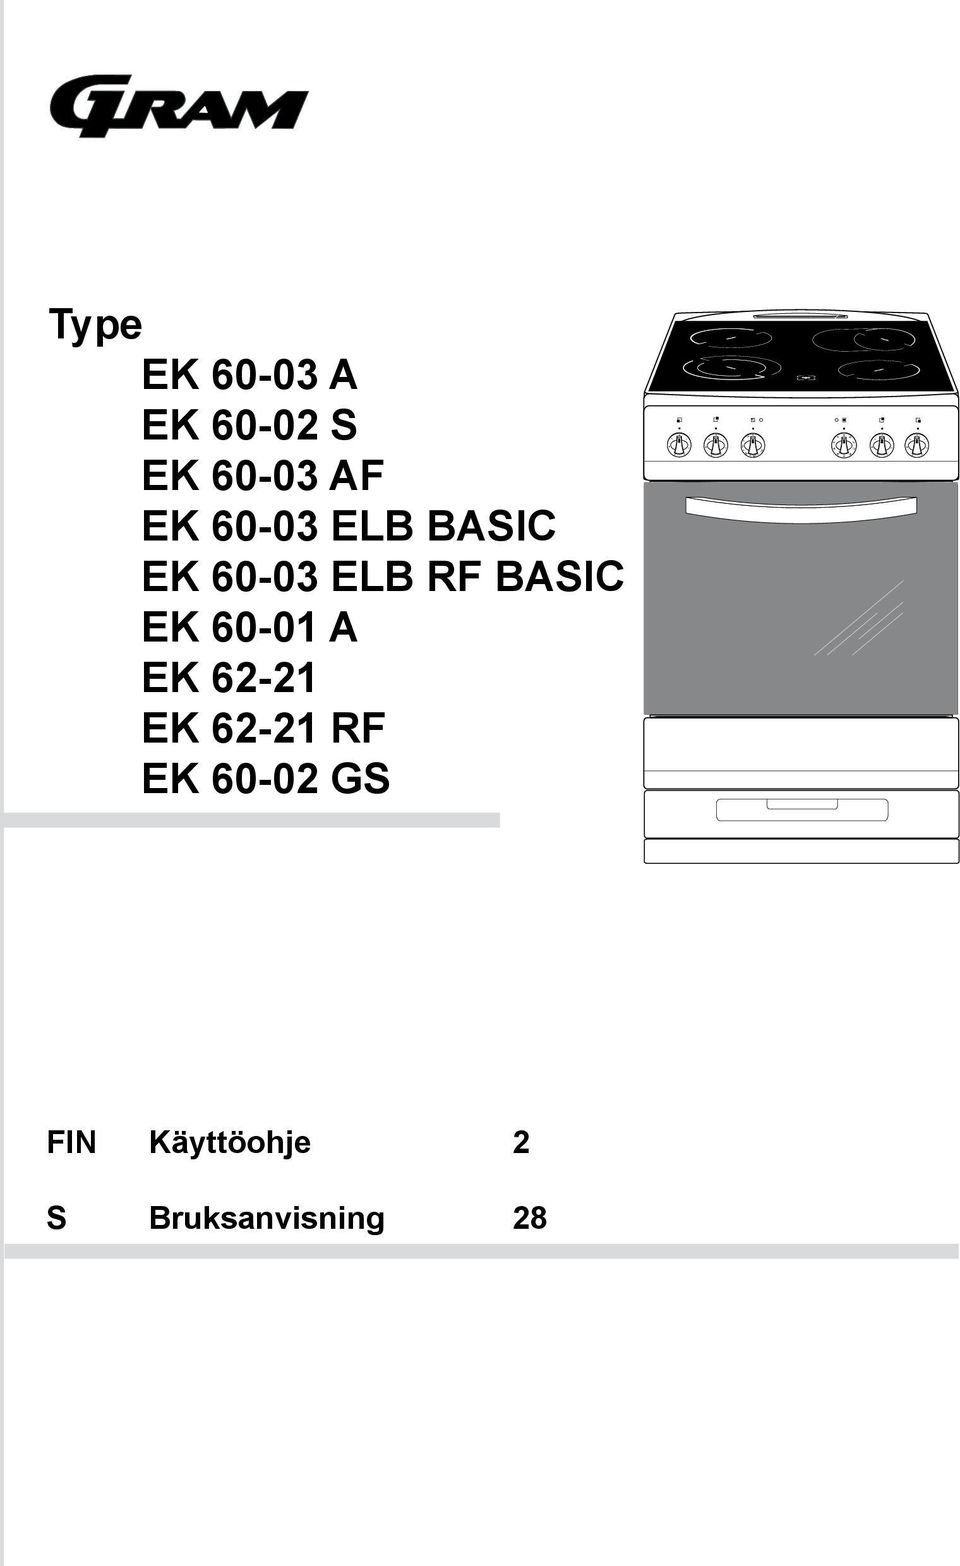 BASIC EK 60-03 ELB RF BASIC EK 60-01 A EK 62-21 EK